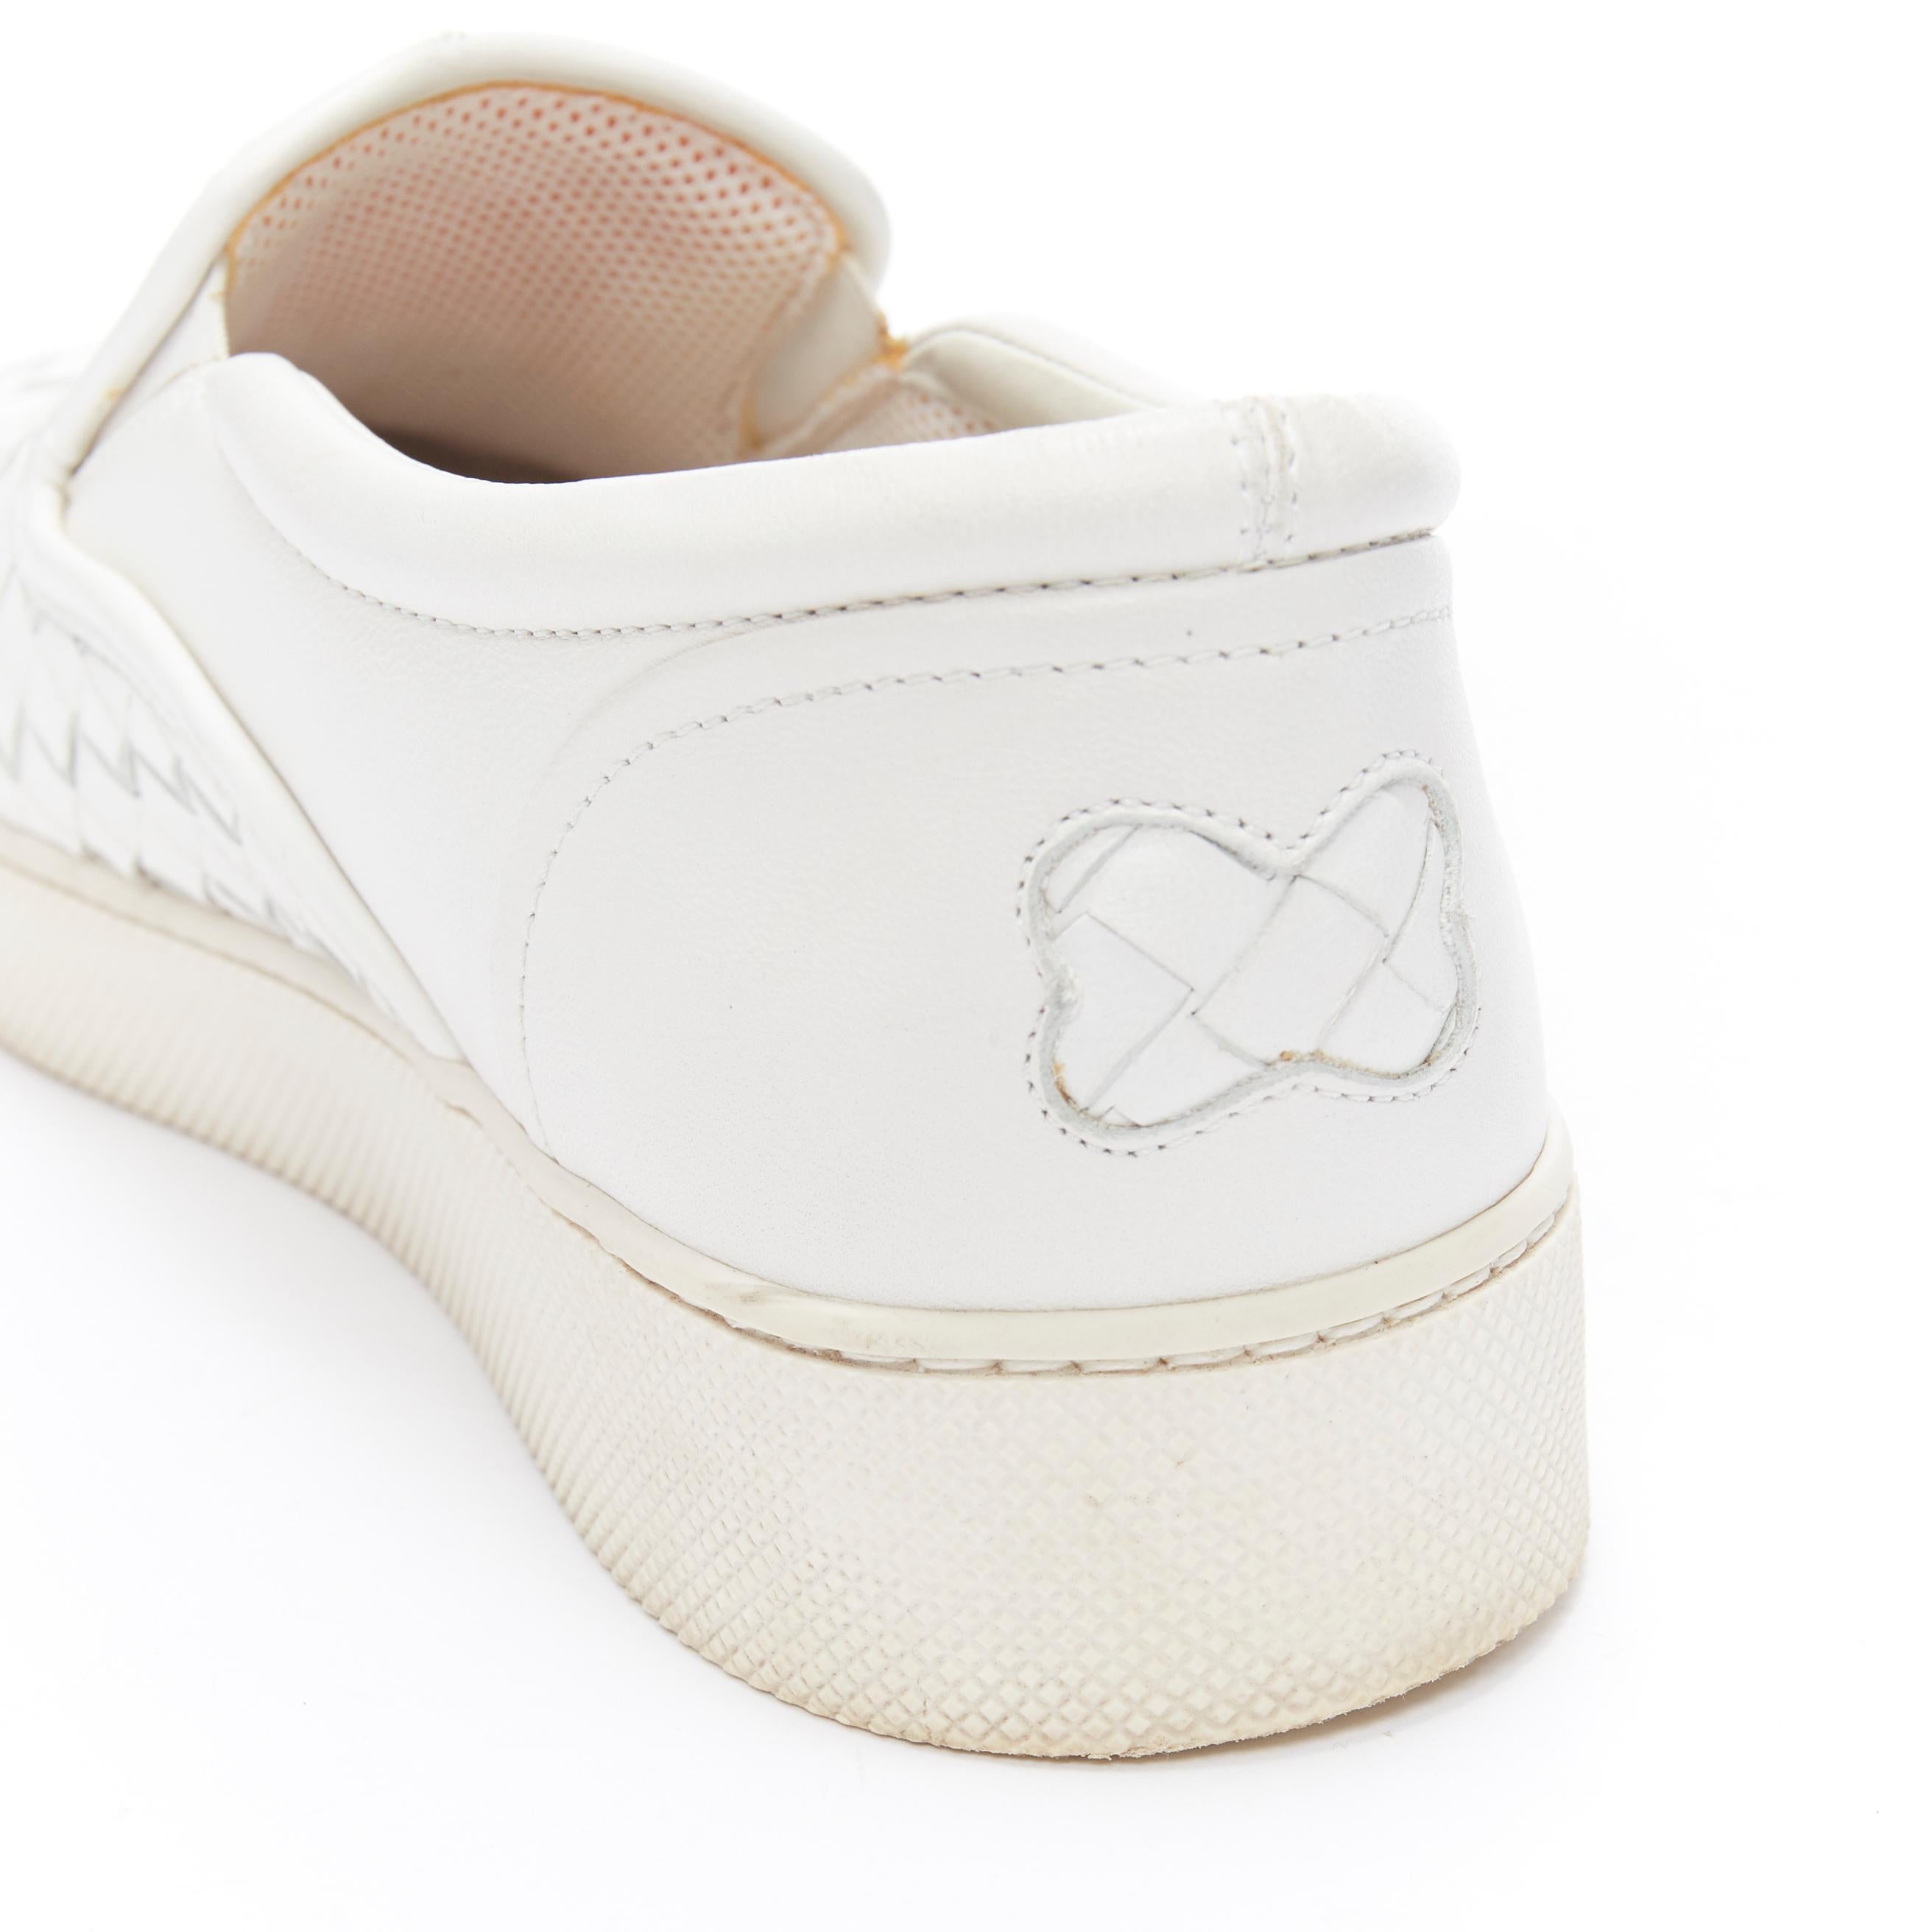 BOTTEGA VENETA white intrecciato woven leather round toe skate shoes EU37.5 1